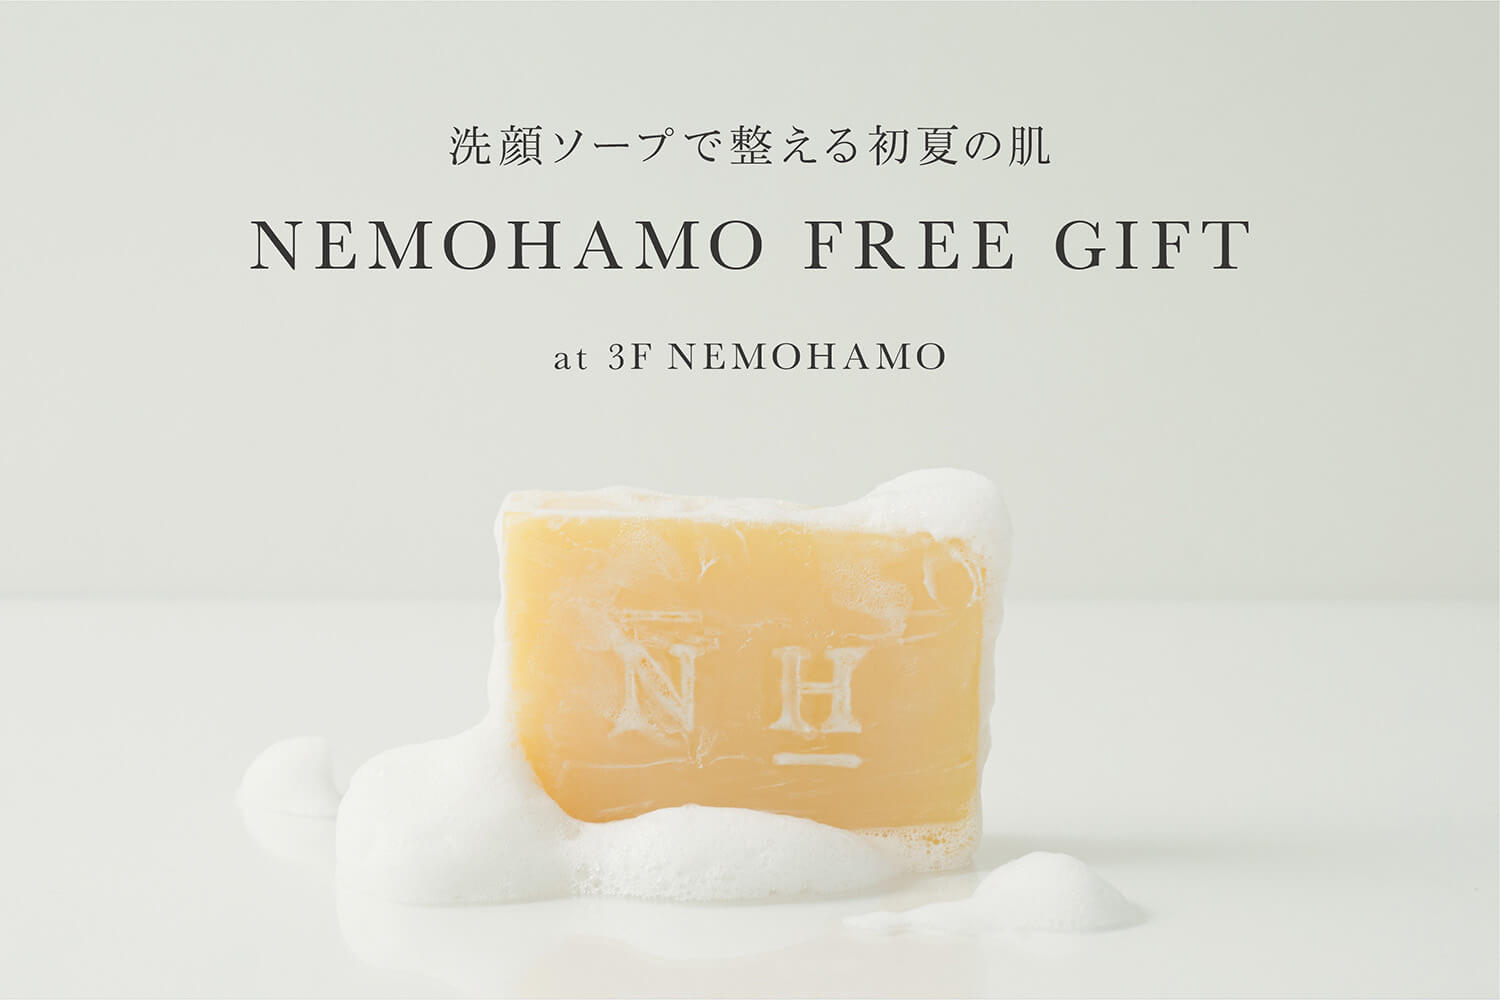 【Free Gift】NEMOHAMO洗顔ソープご購入でサンプルプレゼント